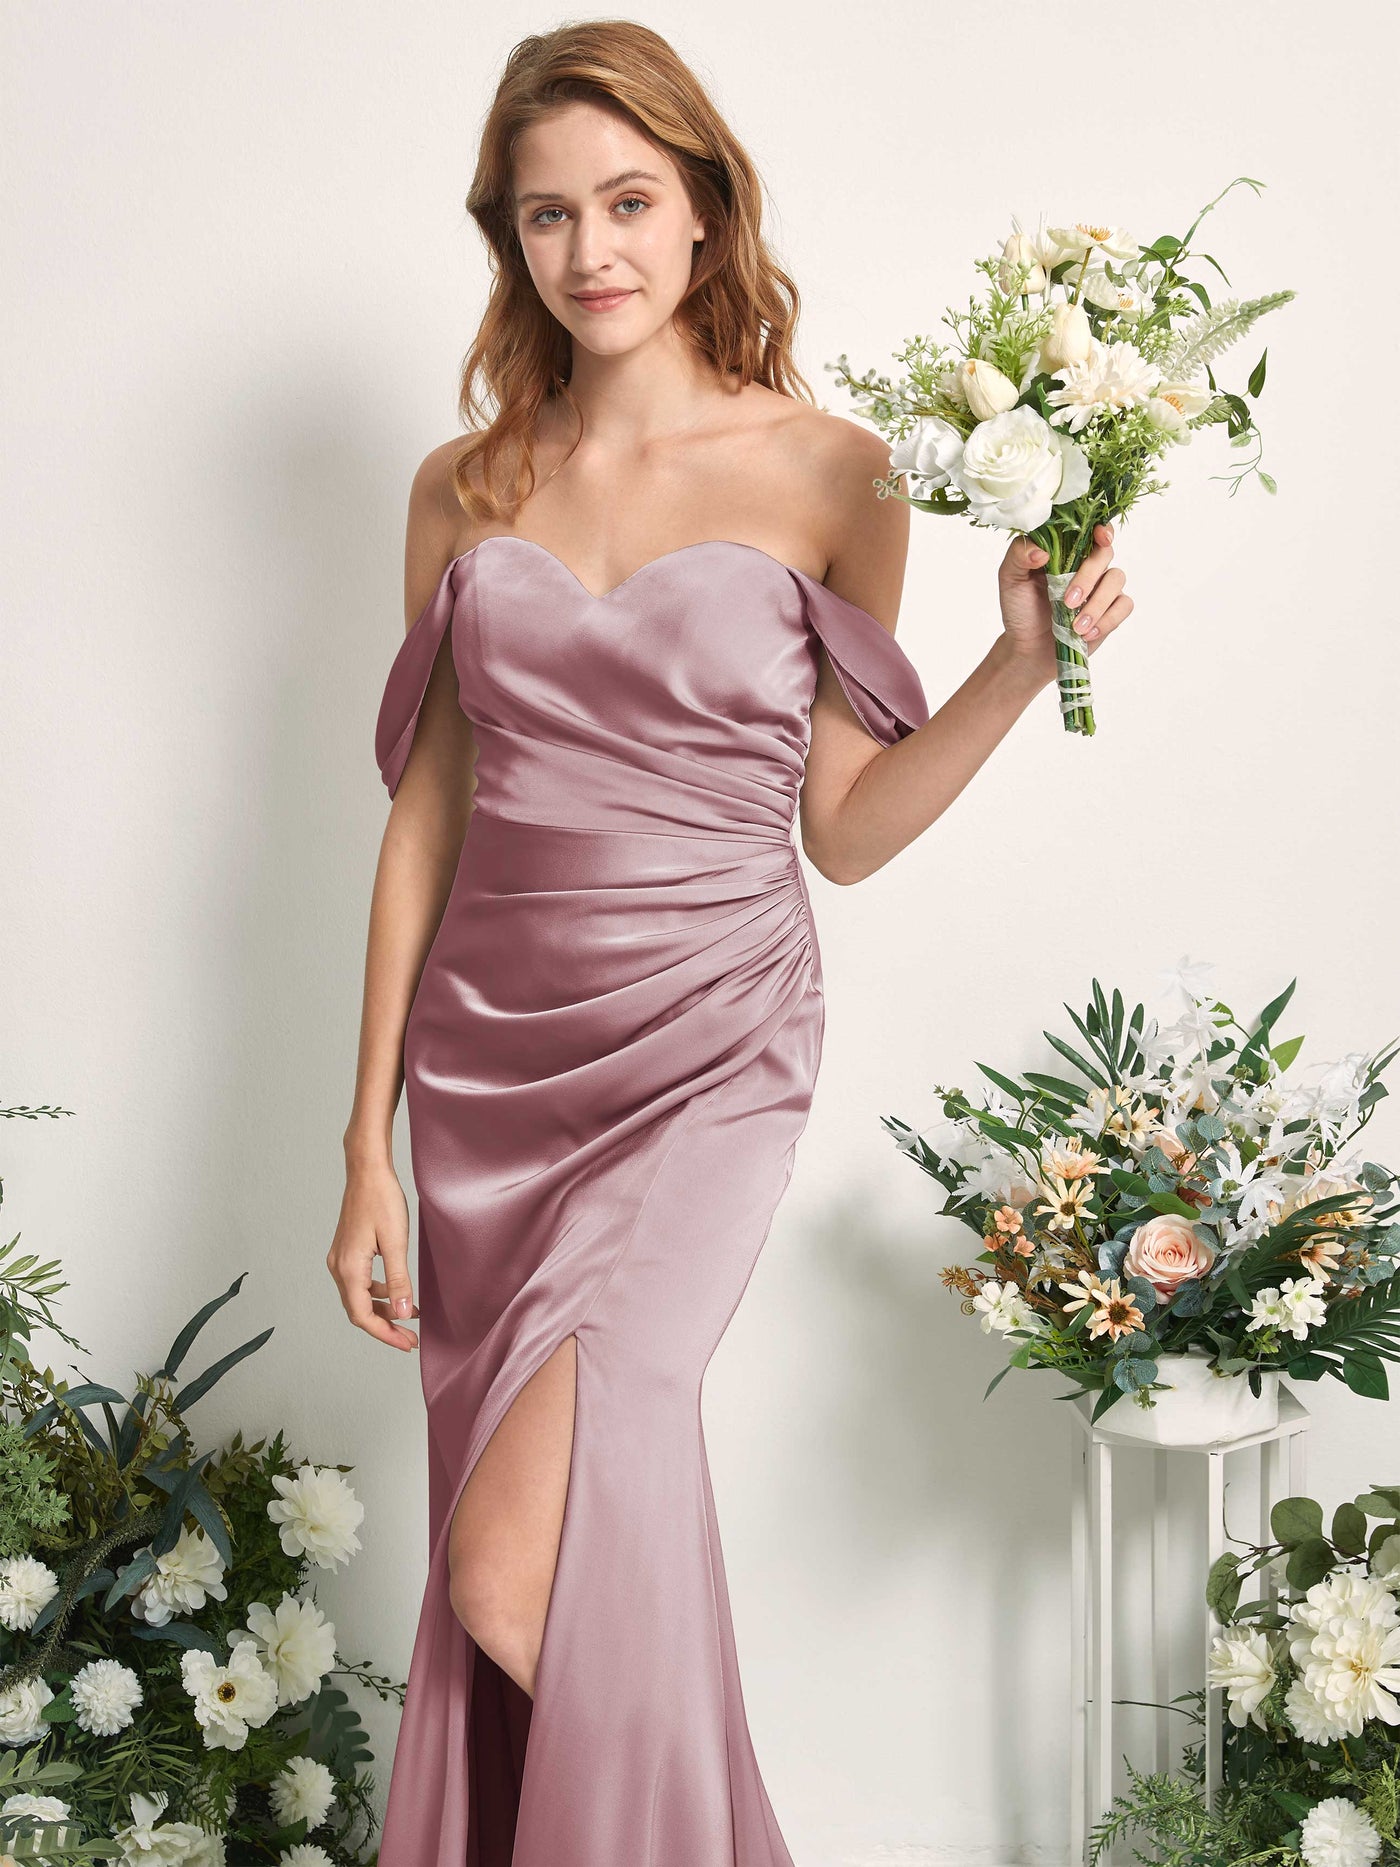 Rose Quartz Bridesmaid Dresses Bridesmaid Dress A-line Satin Off Shoulder Full Length Sleeveless Wedding Party Dress (80225266)#color_rose-quartz